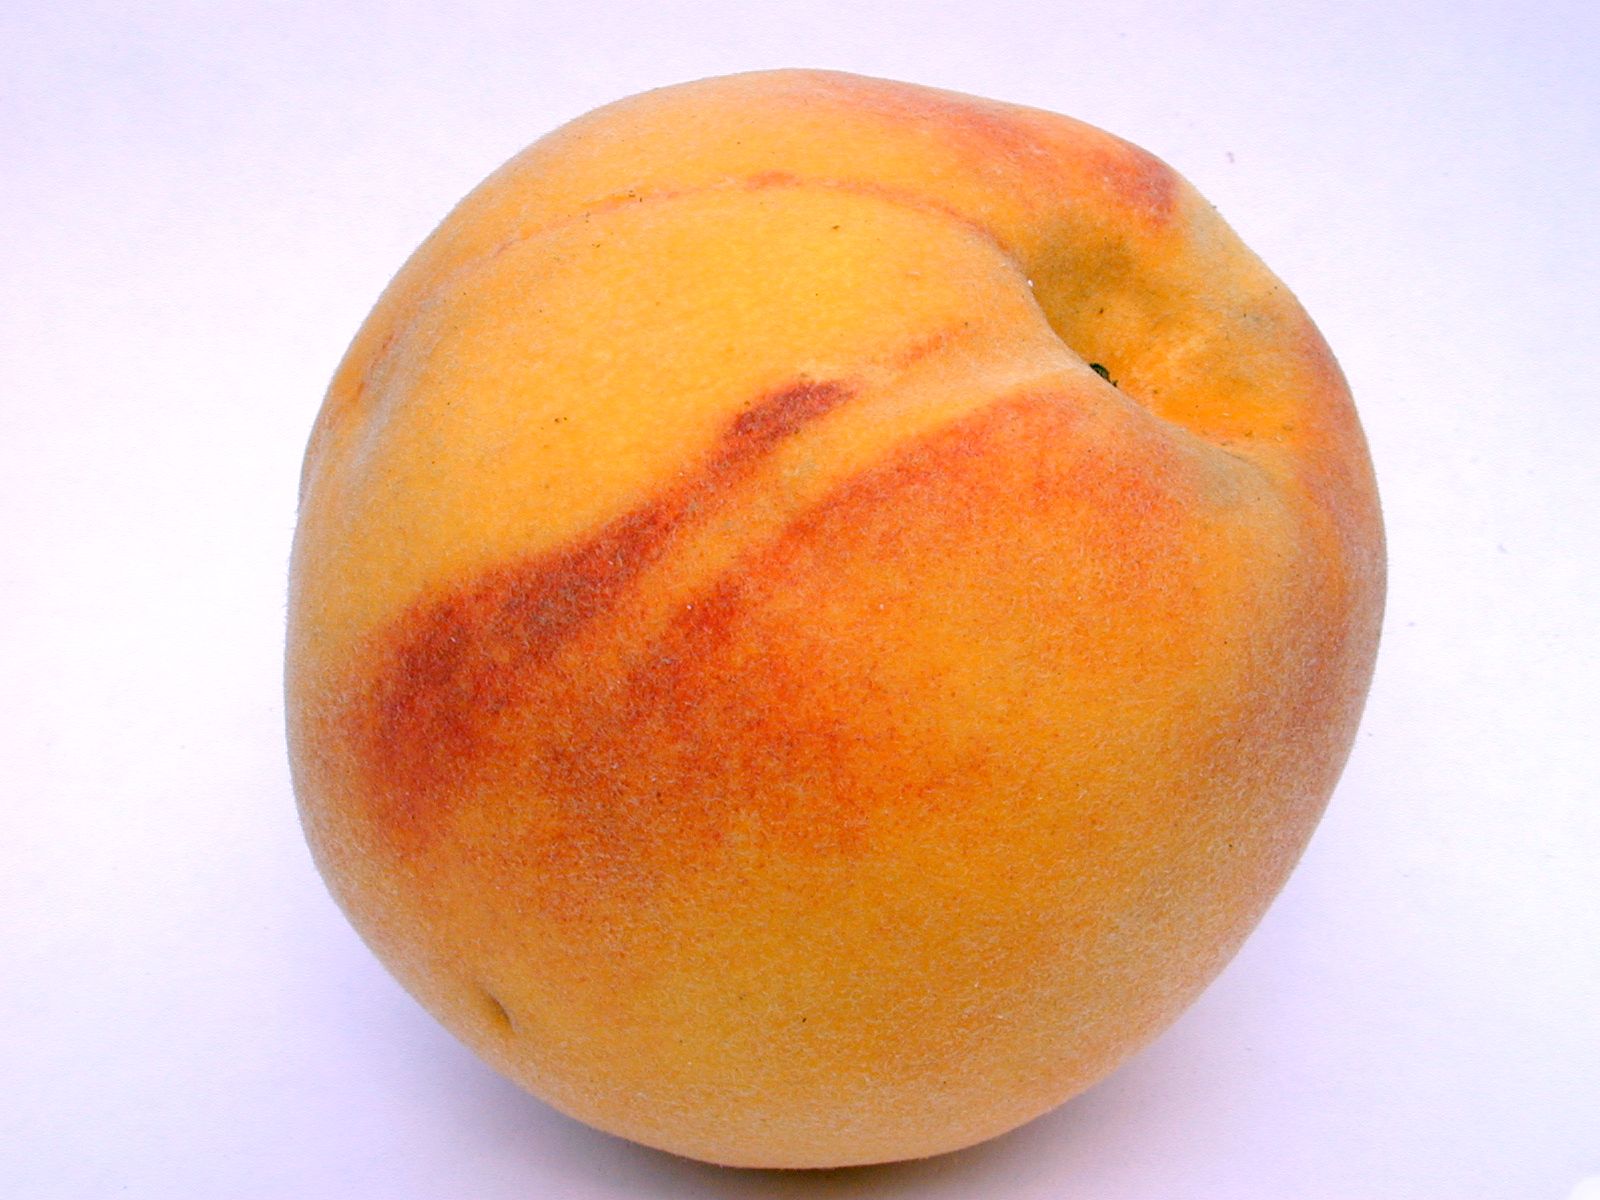 8. OPI Infinite Shine in "Peaches & Cream" - wide 6